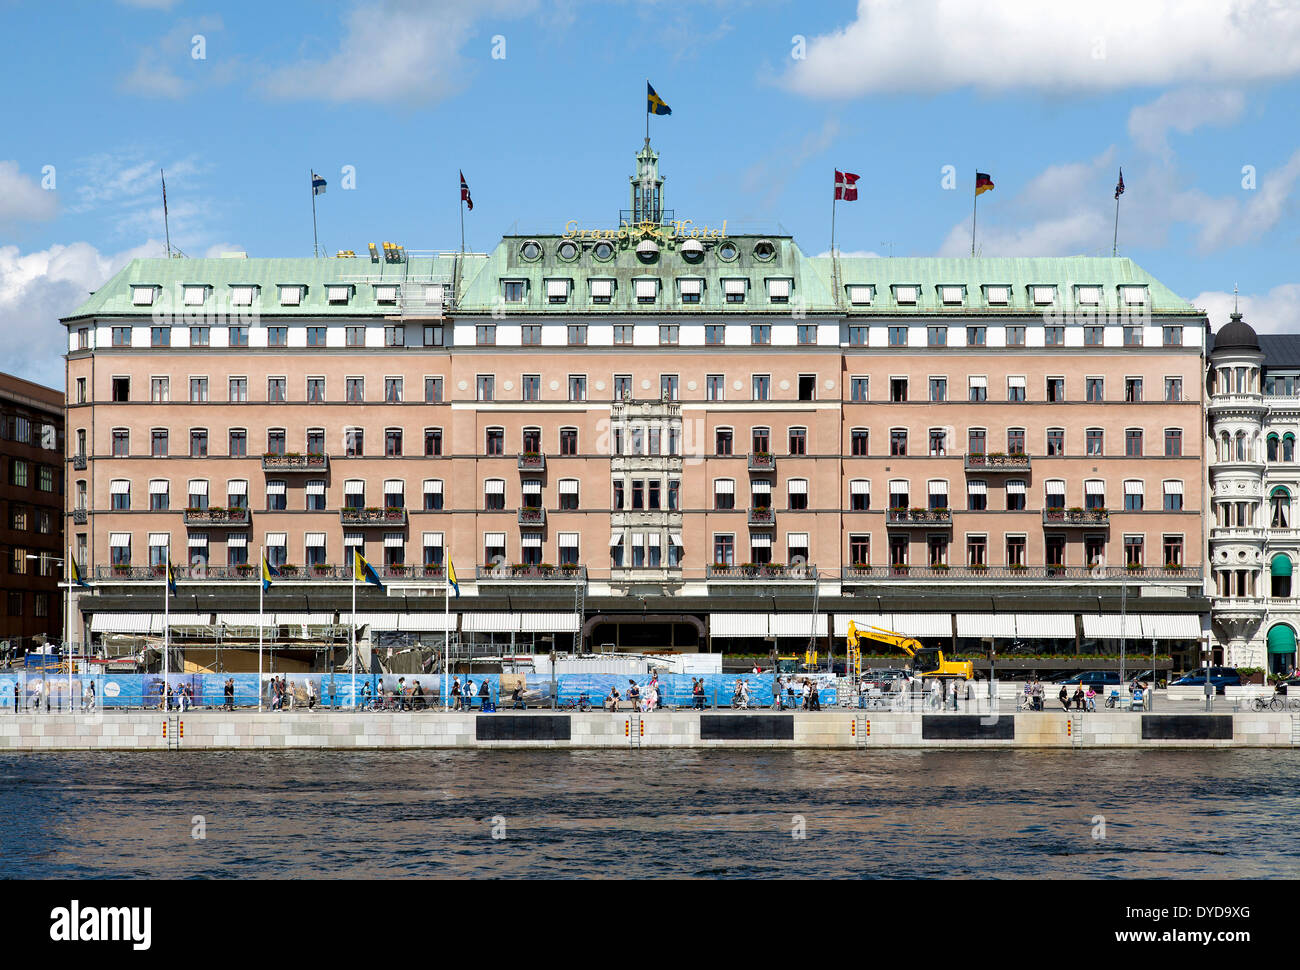 Grand Hotel, Södra Blasieholmshamnen, Stockholm, Stockholms län or Stockholm County, Sweden Stock Photo